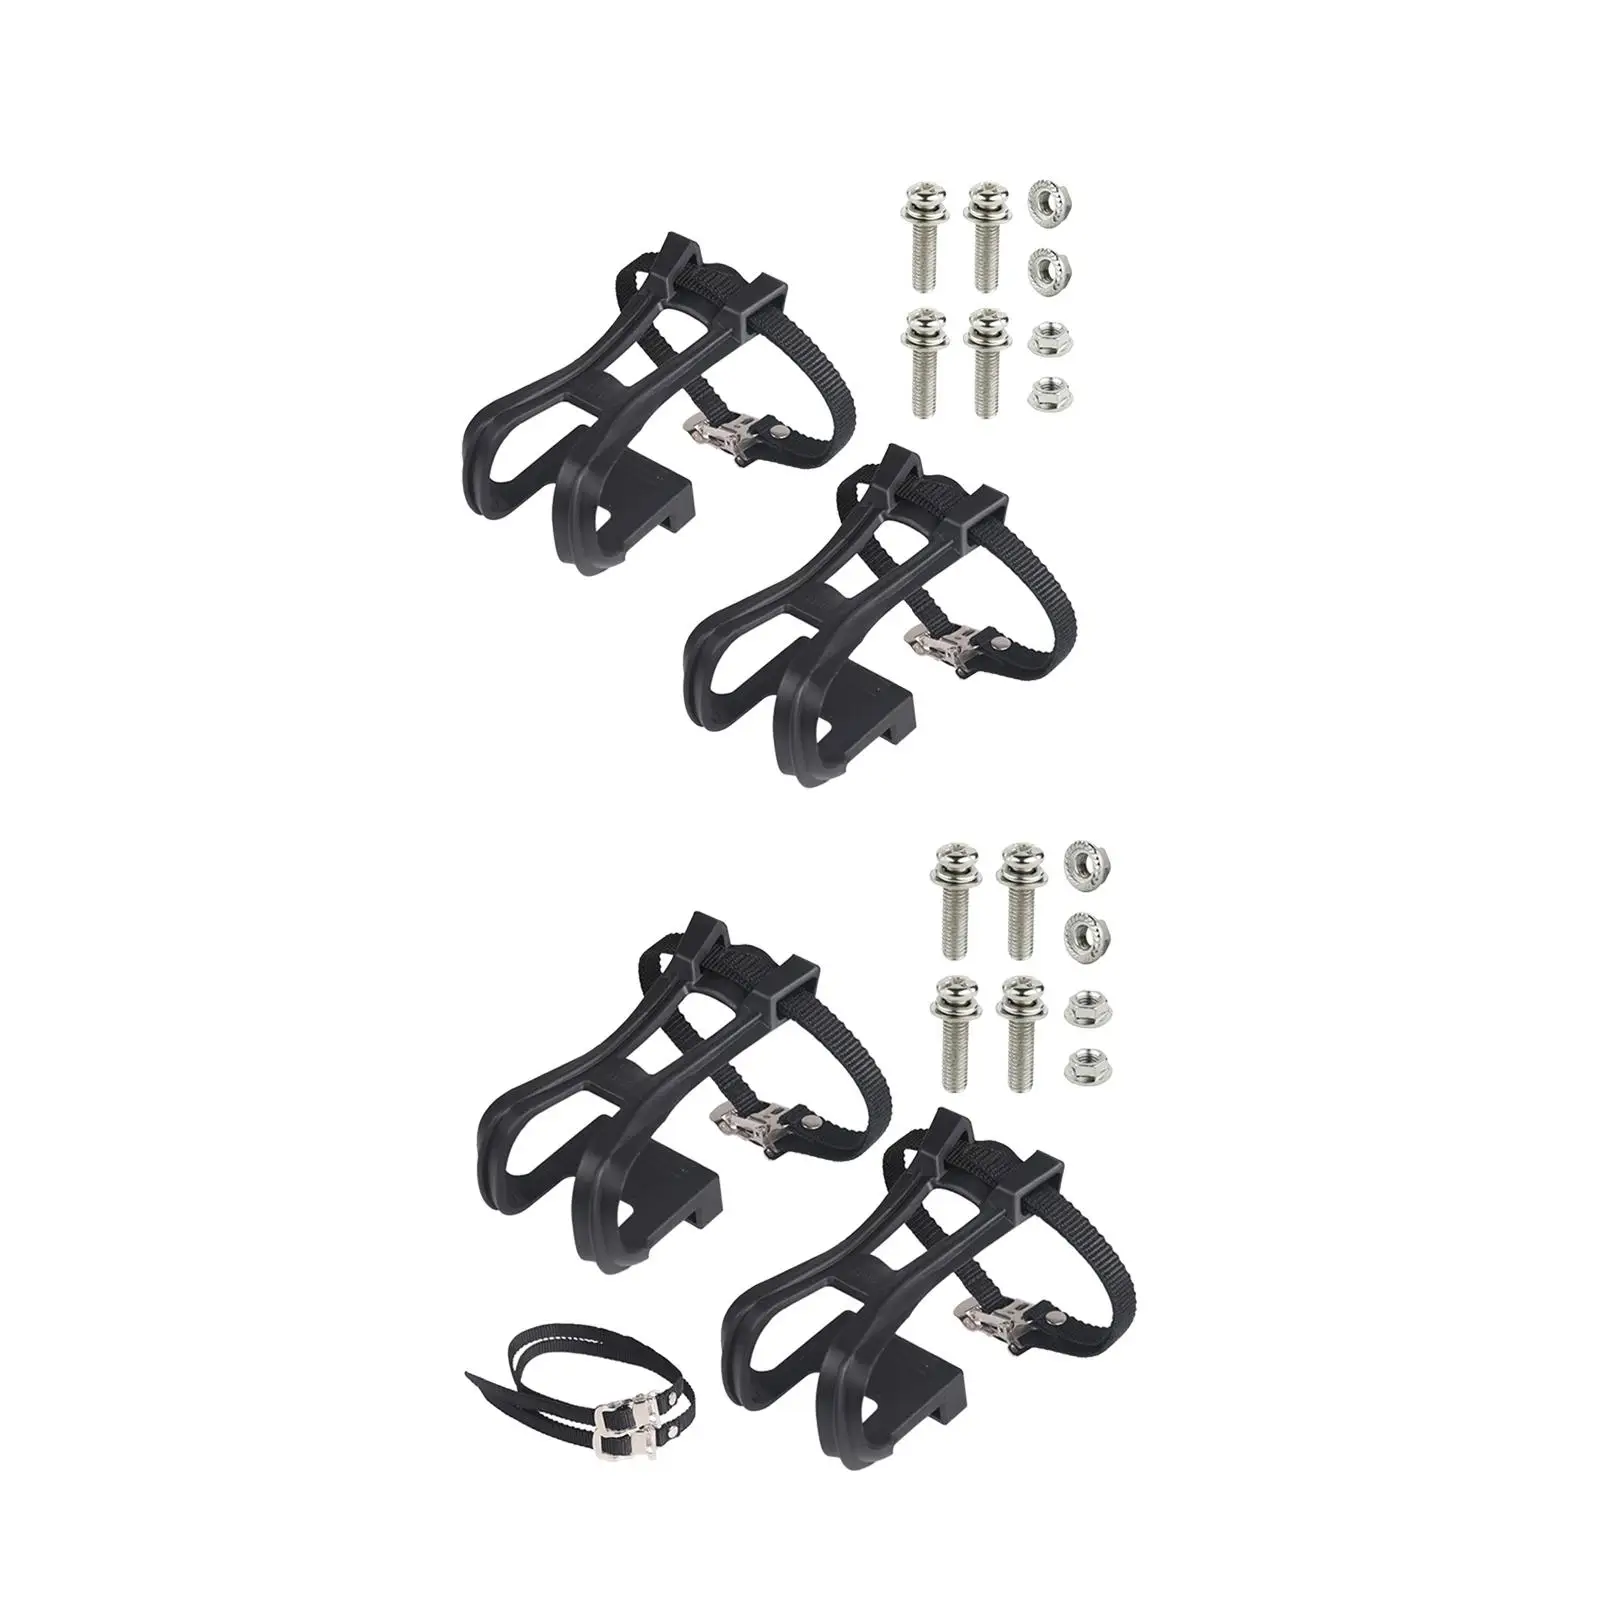 Зажимы для педалей Ремни для велосипедных педалей Сверхпрочные с винтами Регулируемые нескользящие накладки для ног для стационарного велотренажера 0